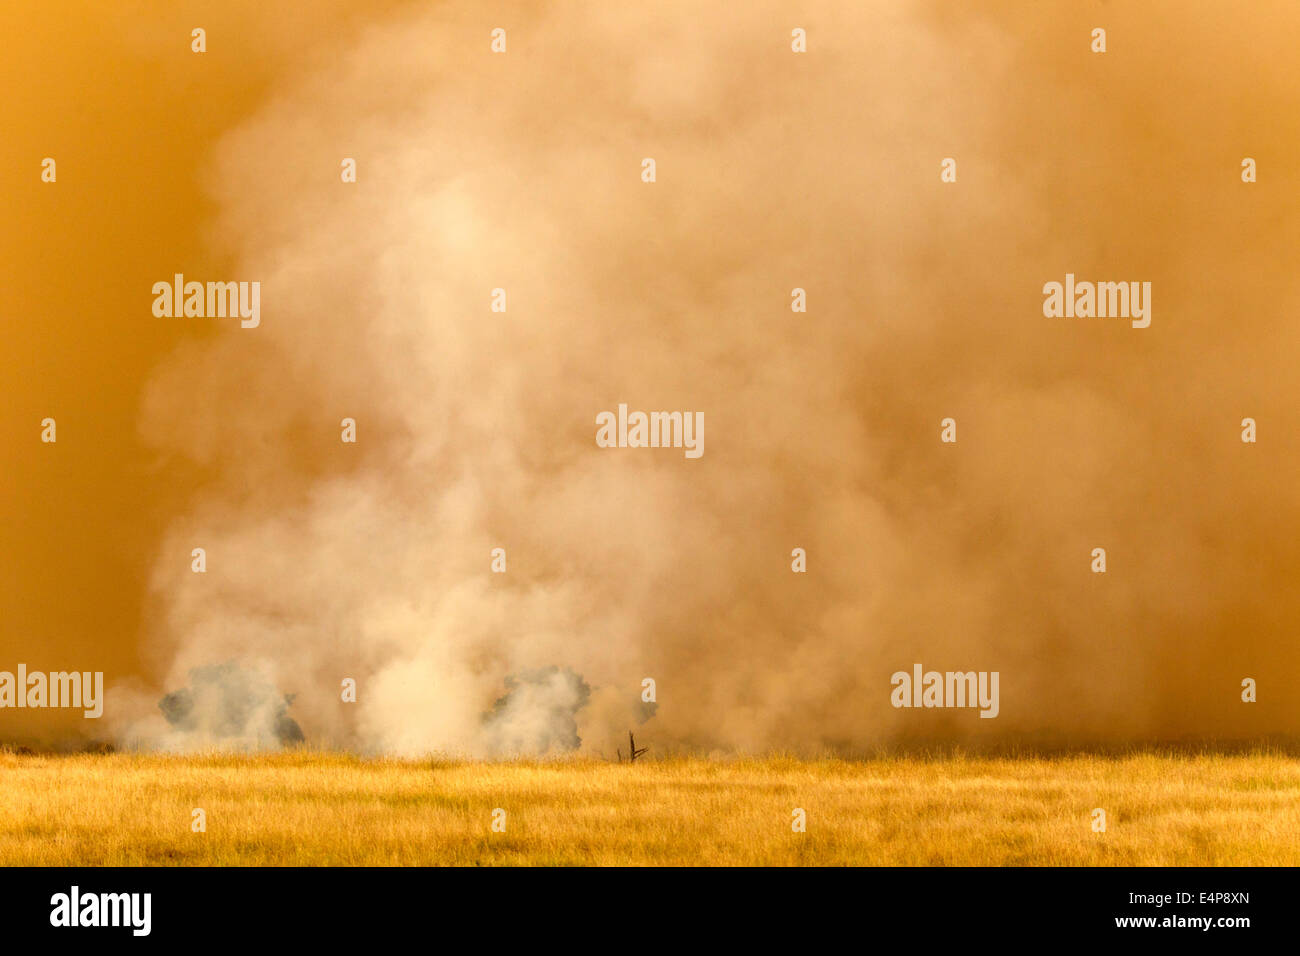 Gnuherde vor Sandsturm - Kenya Stock Photo